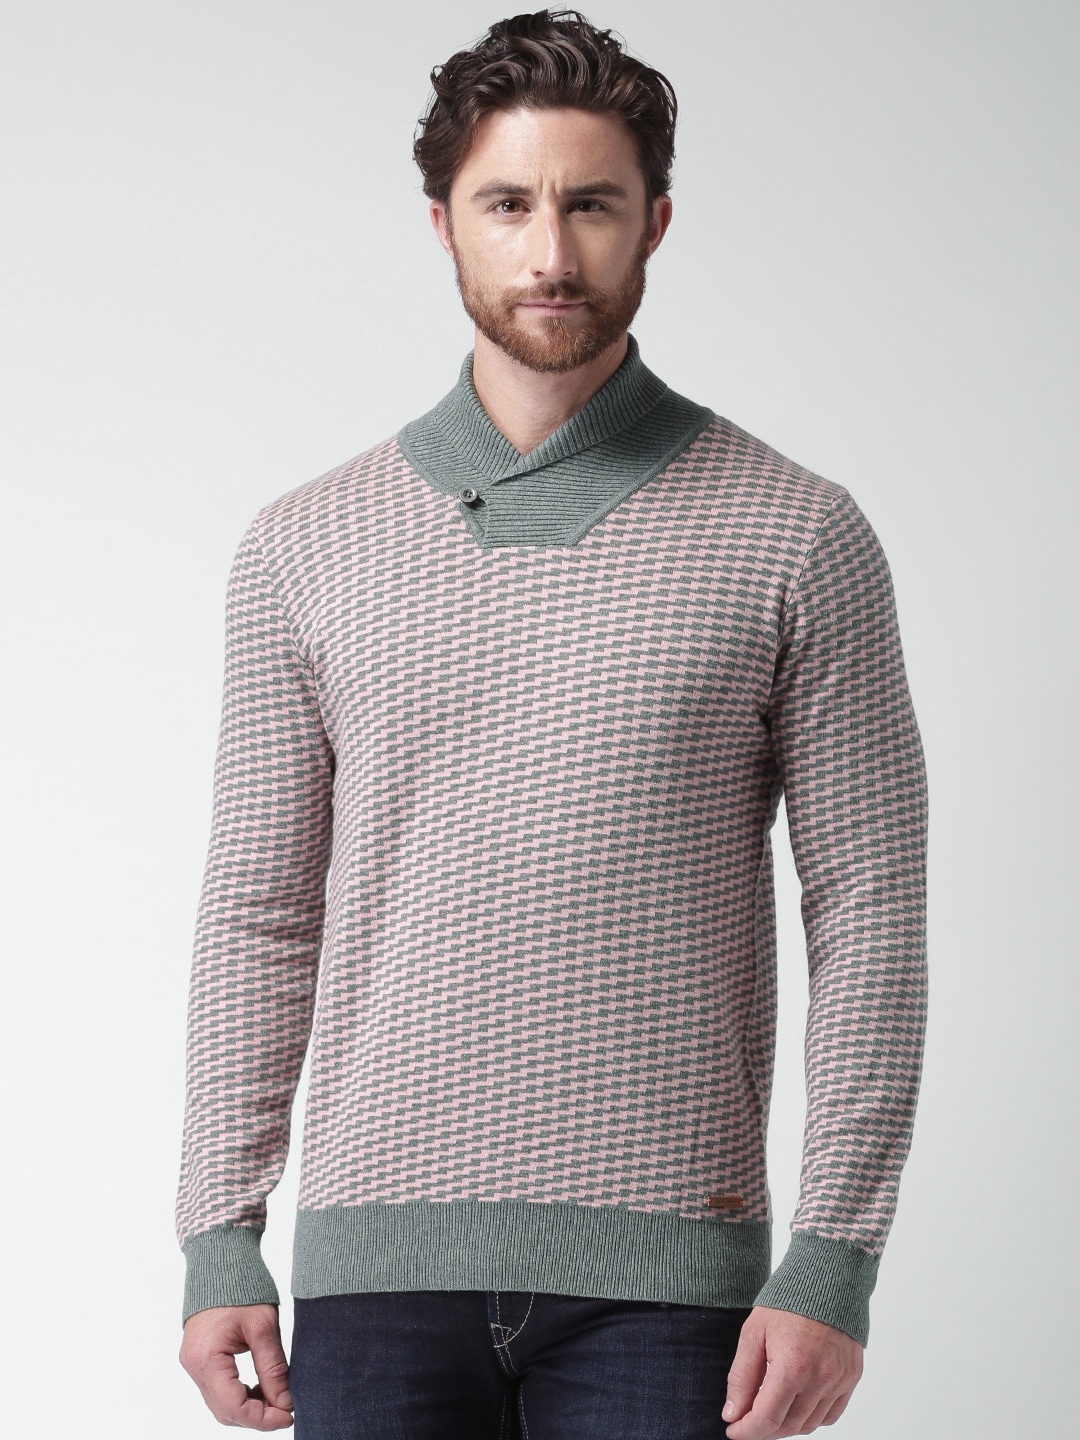 Men Pink Sweater - Buy Men Pink Sweater online in India